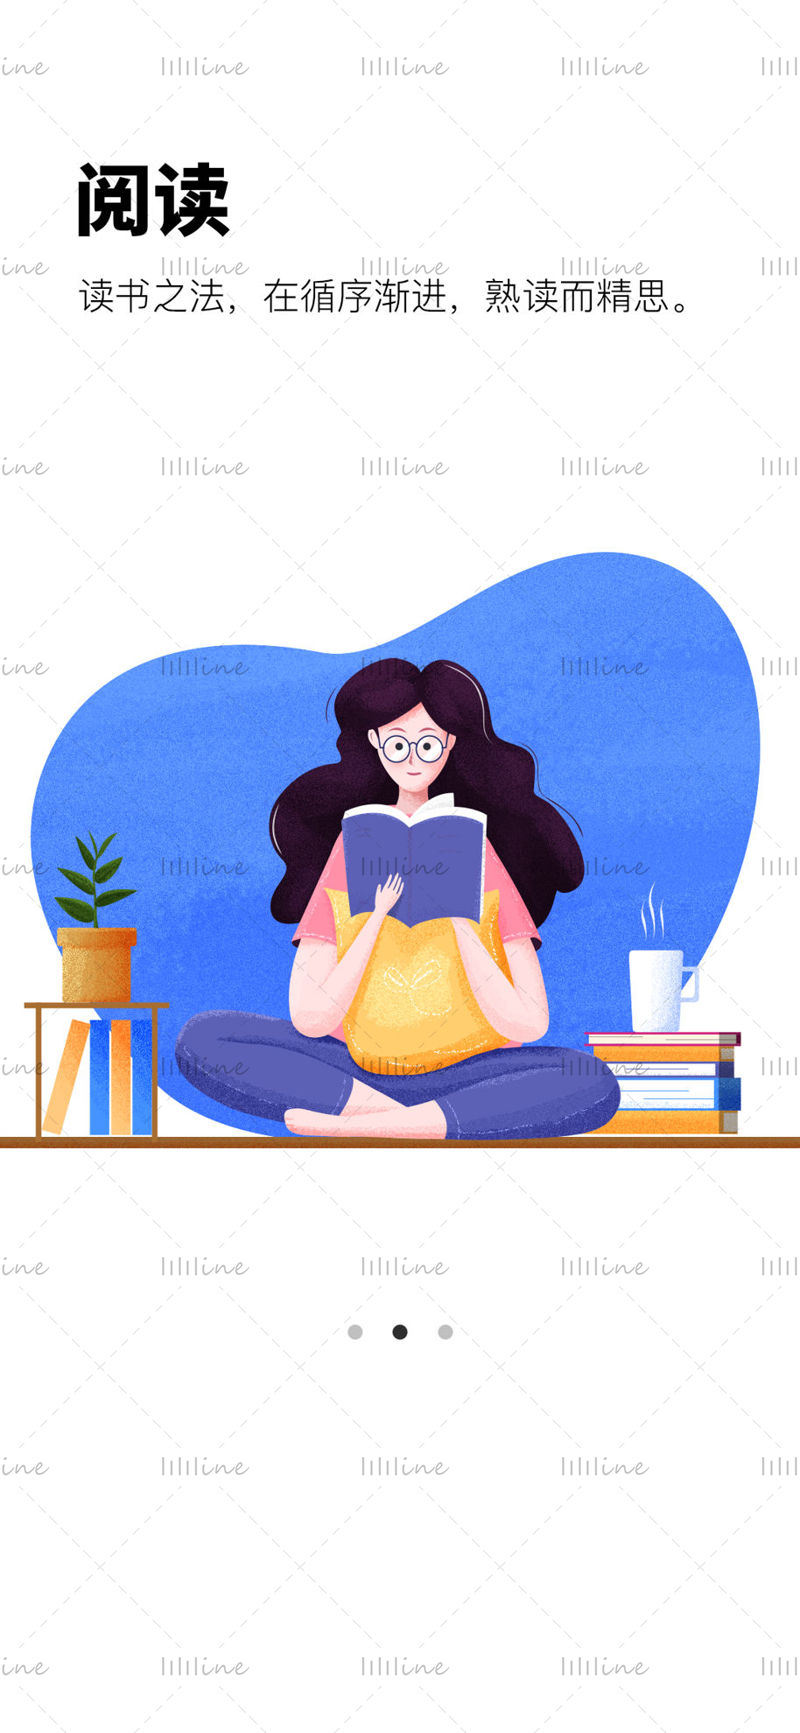 Girl reading poster illustration